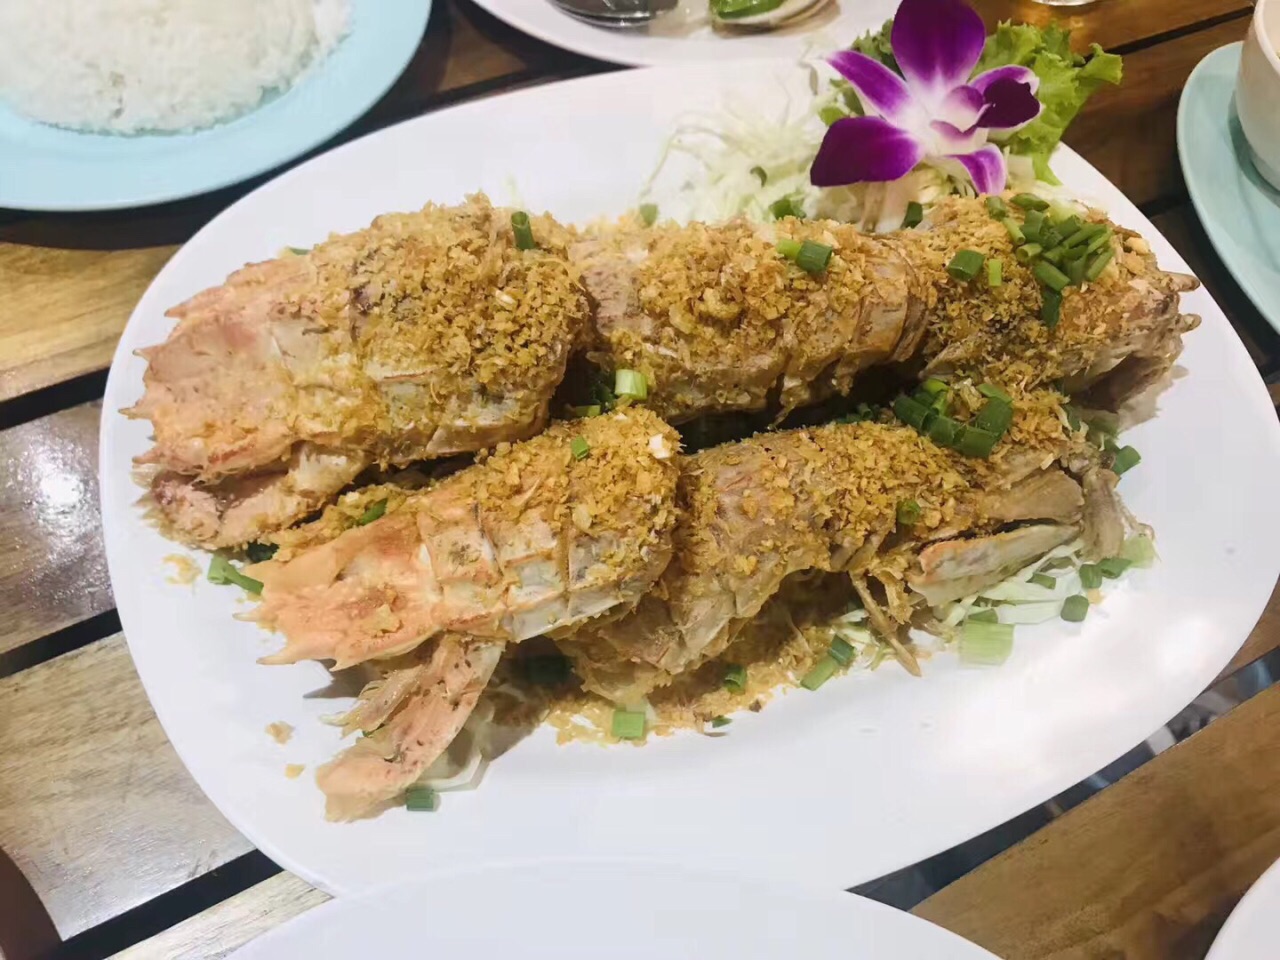 普吉岛必须尝试的最佳当地海鲜餐厅 - Thaiger 消息